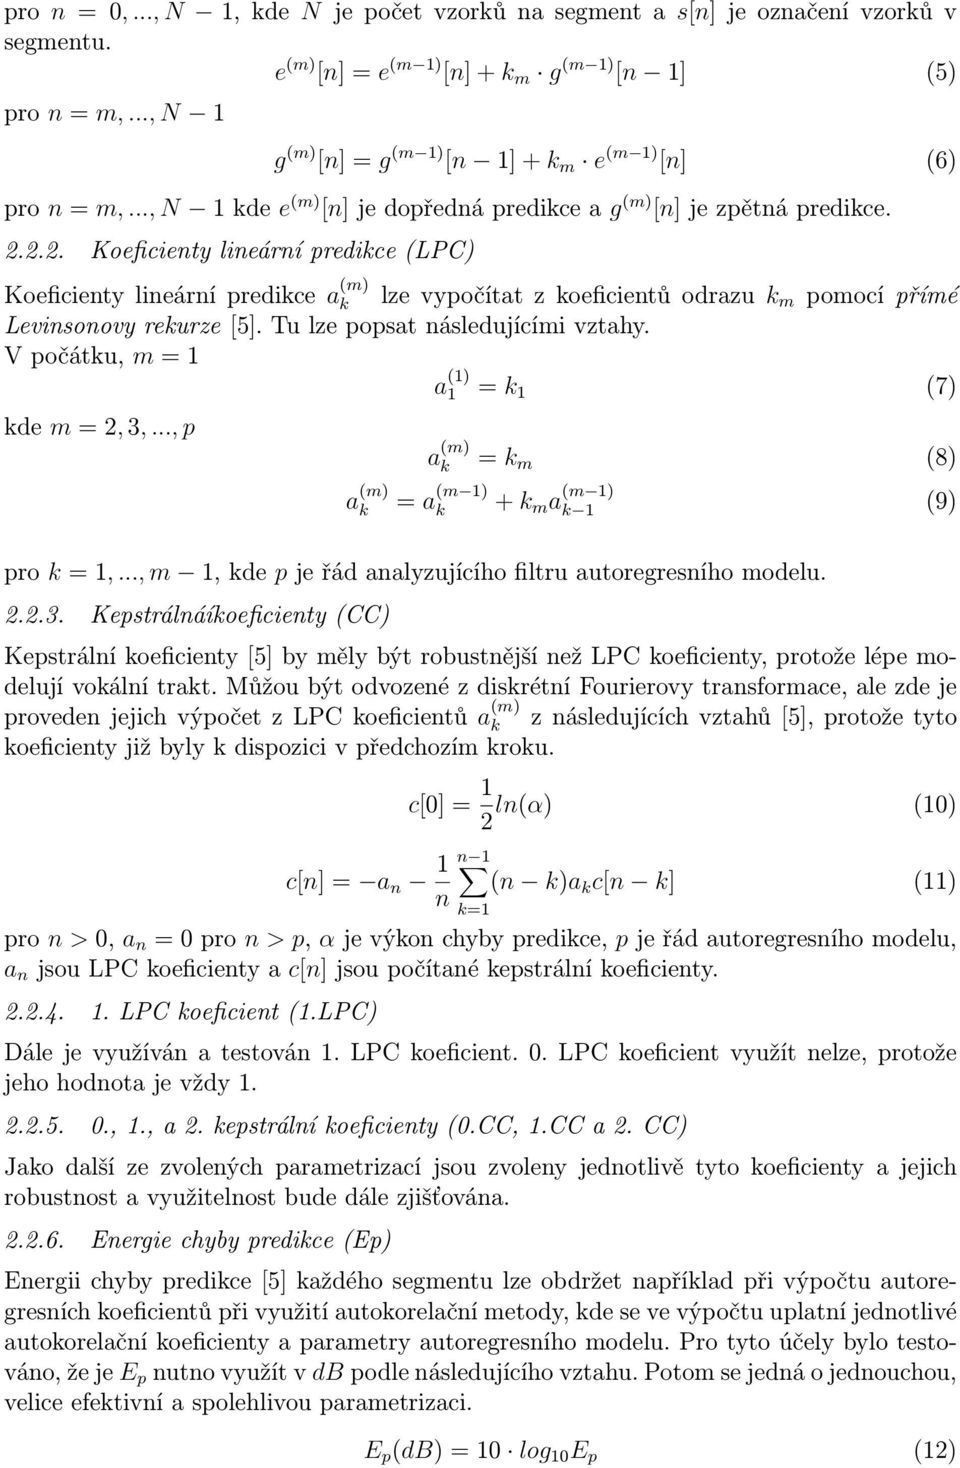 ... Koeficienty lineární predikce (LPC) Koeficienty lineární predikce a (m) k lze vypočítat z koeficientů odrazu k m pomocí přímé Levinsonovy rekurze [5]. Tu lze popsat následujícími vztahy.